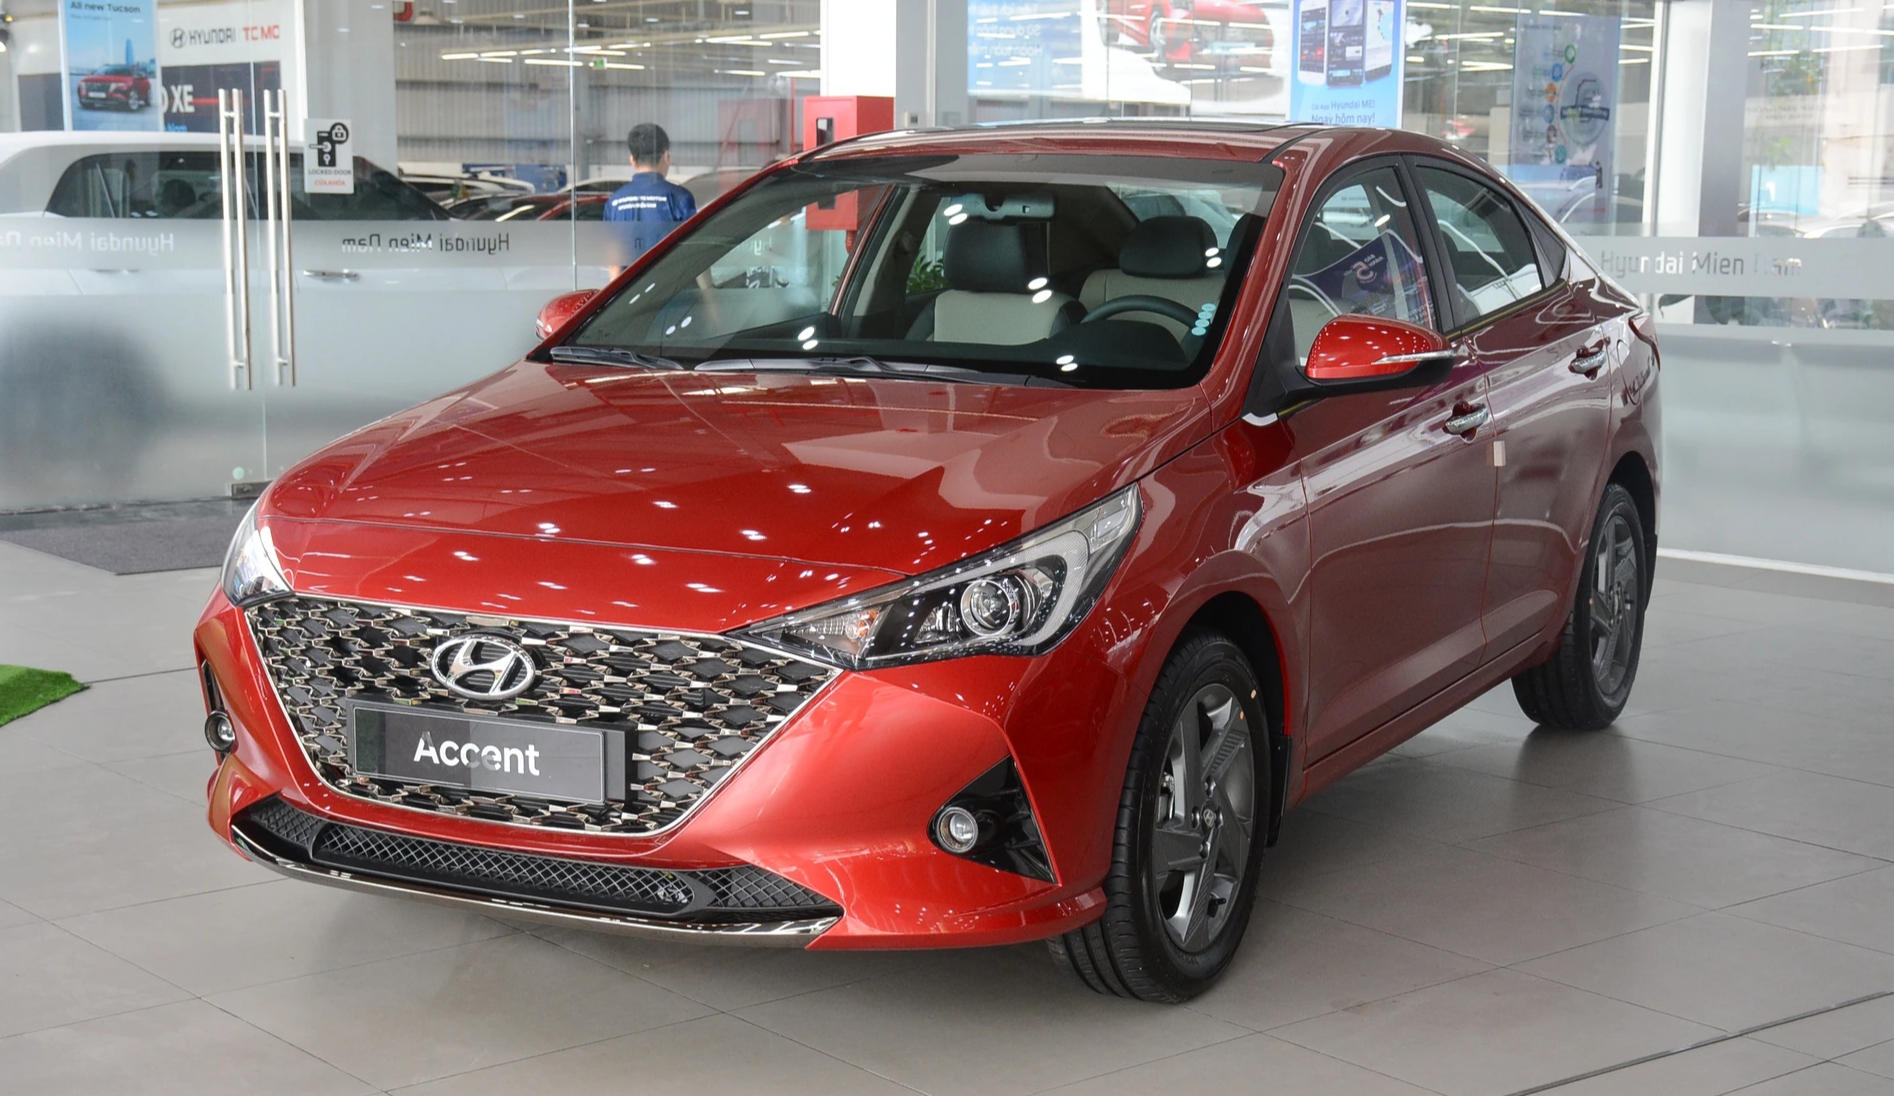 Hyundai Accent tiếp tục dậm chân ở vị trí thứ 5 trong cuộc đua doanh số tháng 4.2023, khi doanh số bán chỉ đạt 848 xe, giảm 119 xe so với tháng 3.2024. Tương tự những năm trước, Hyundai Accent tại Việt Nam do Hyundai Thành Công lắp ráp và phân phối, tuy nhiên mẫu xe này không có nhiều thay đổi về thiết kế, công nghệ. Xe hiện có 4 phiên bản, đi kèm mức giá 426 - 542 triệu đồng.